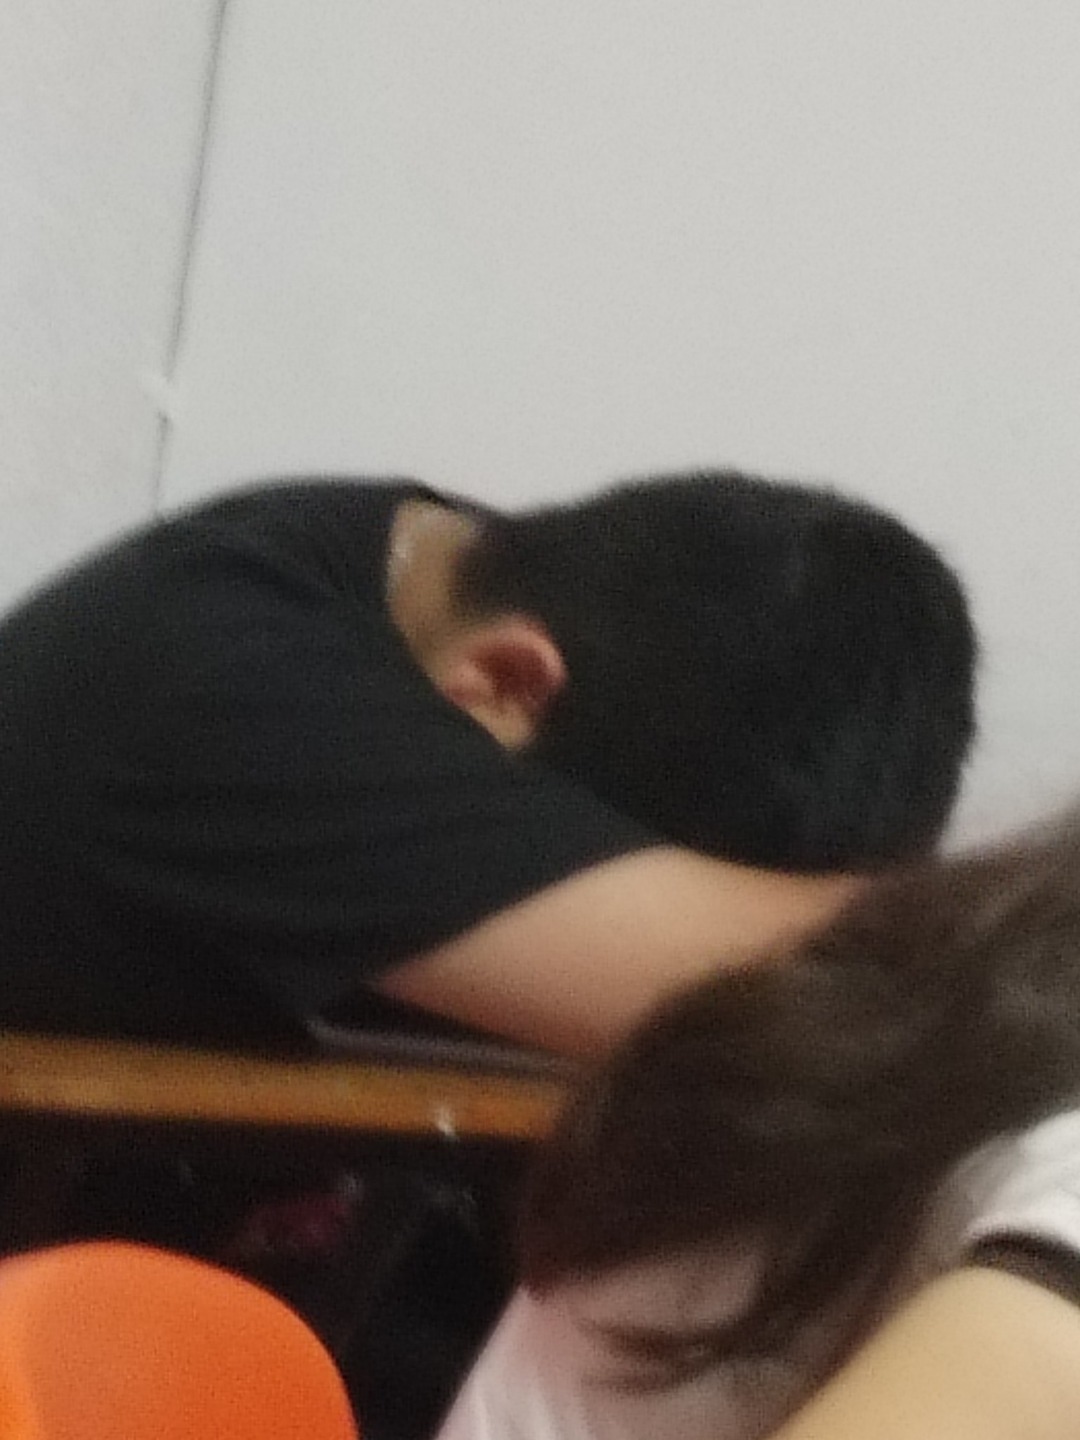 Yo durmiendo en clase - meme